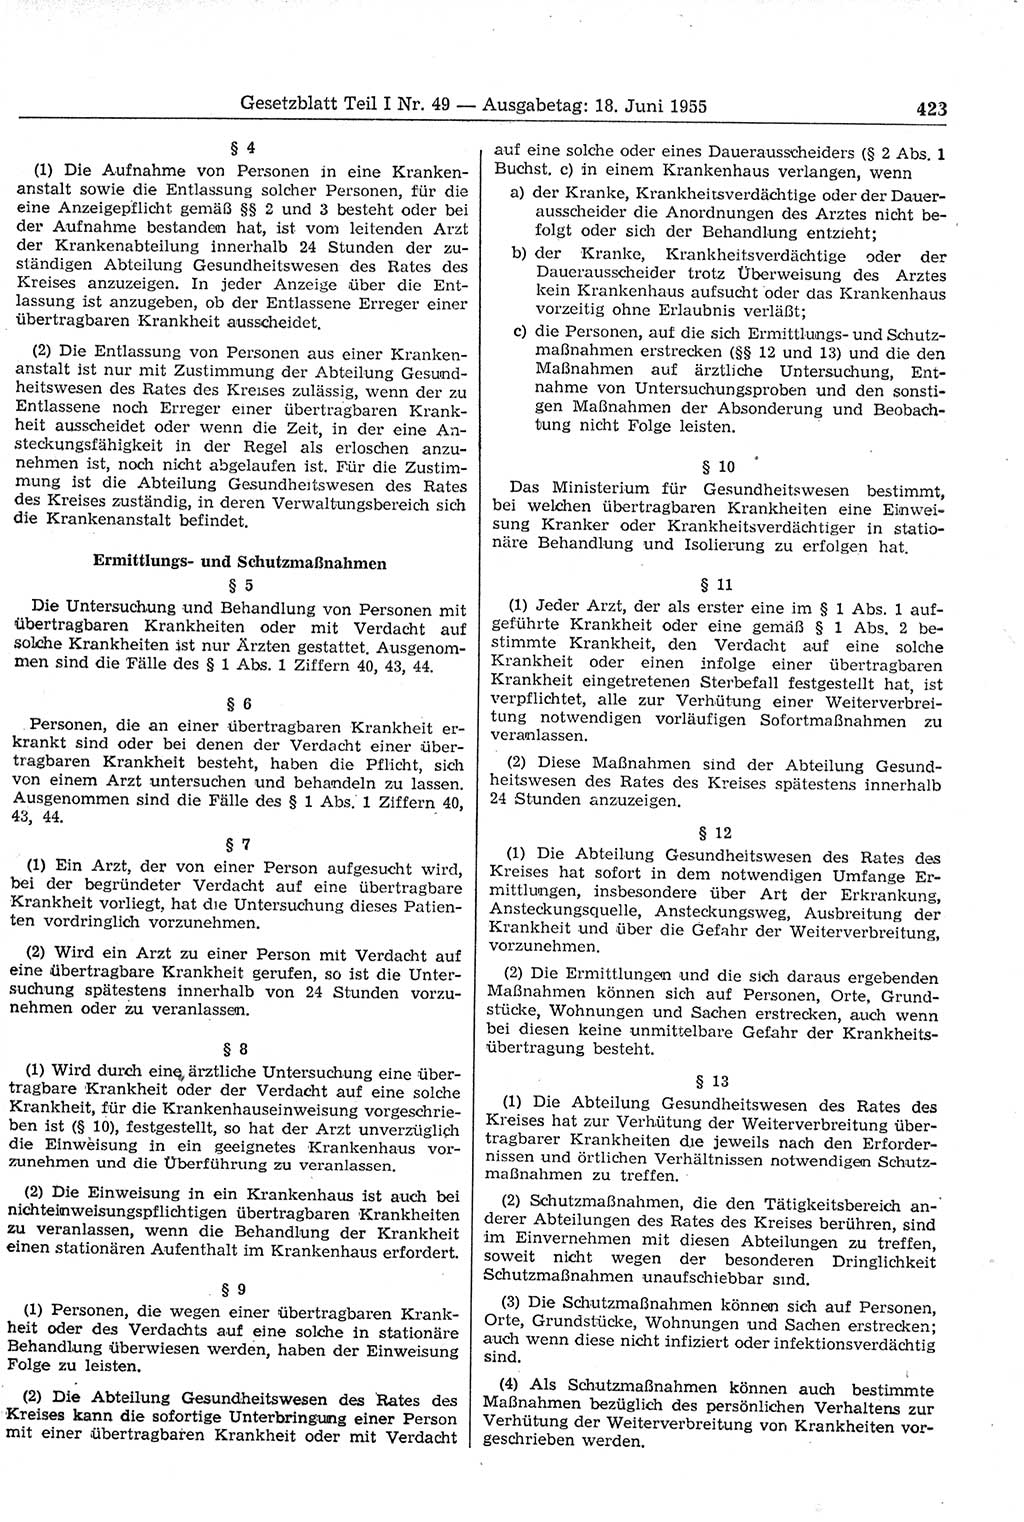 Gesetzblatt (GBl.) der Deutschen Demokratischen Republik (DDR) Teil Ⅰ 1955, Seite 423 (GBl. DDR Ⅰ 1955, S. 423)